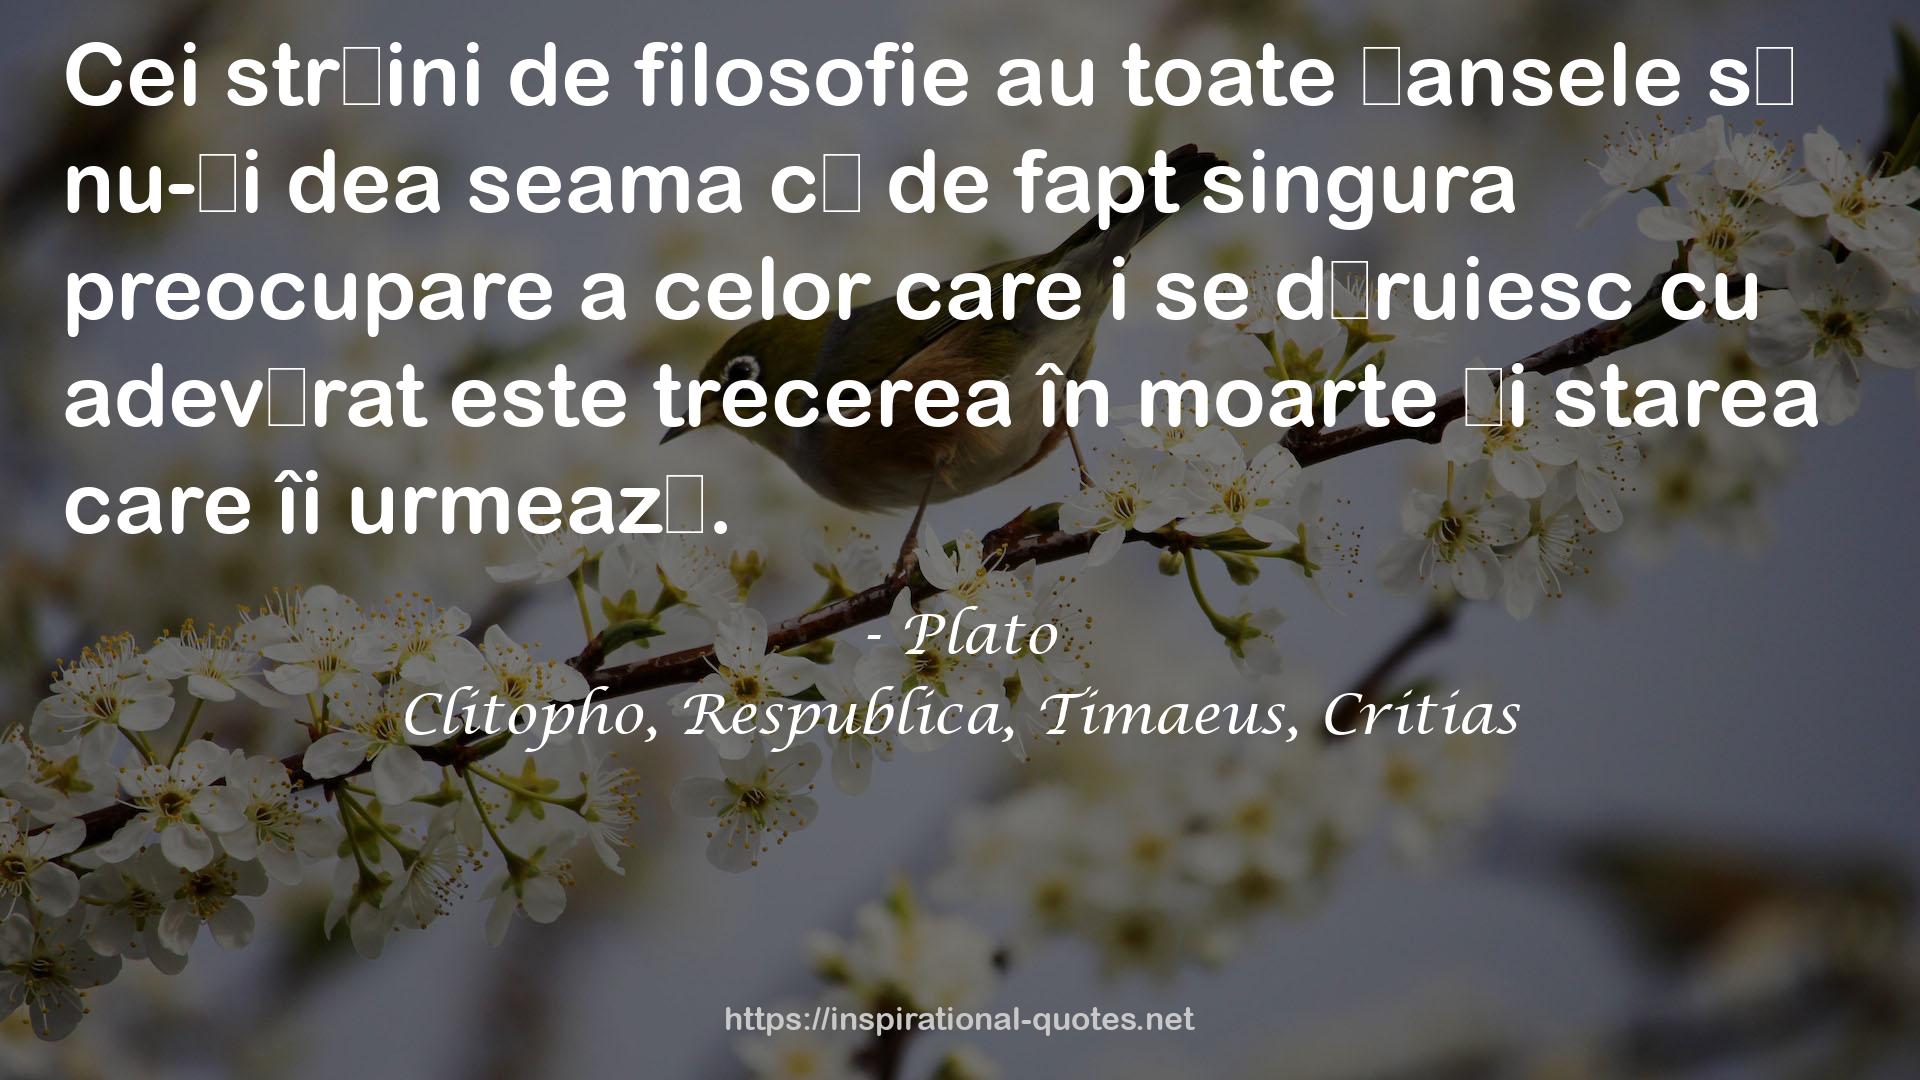 Clitopho, Respublica, Timaeus, Critias QUOTES